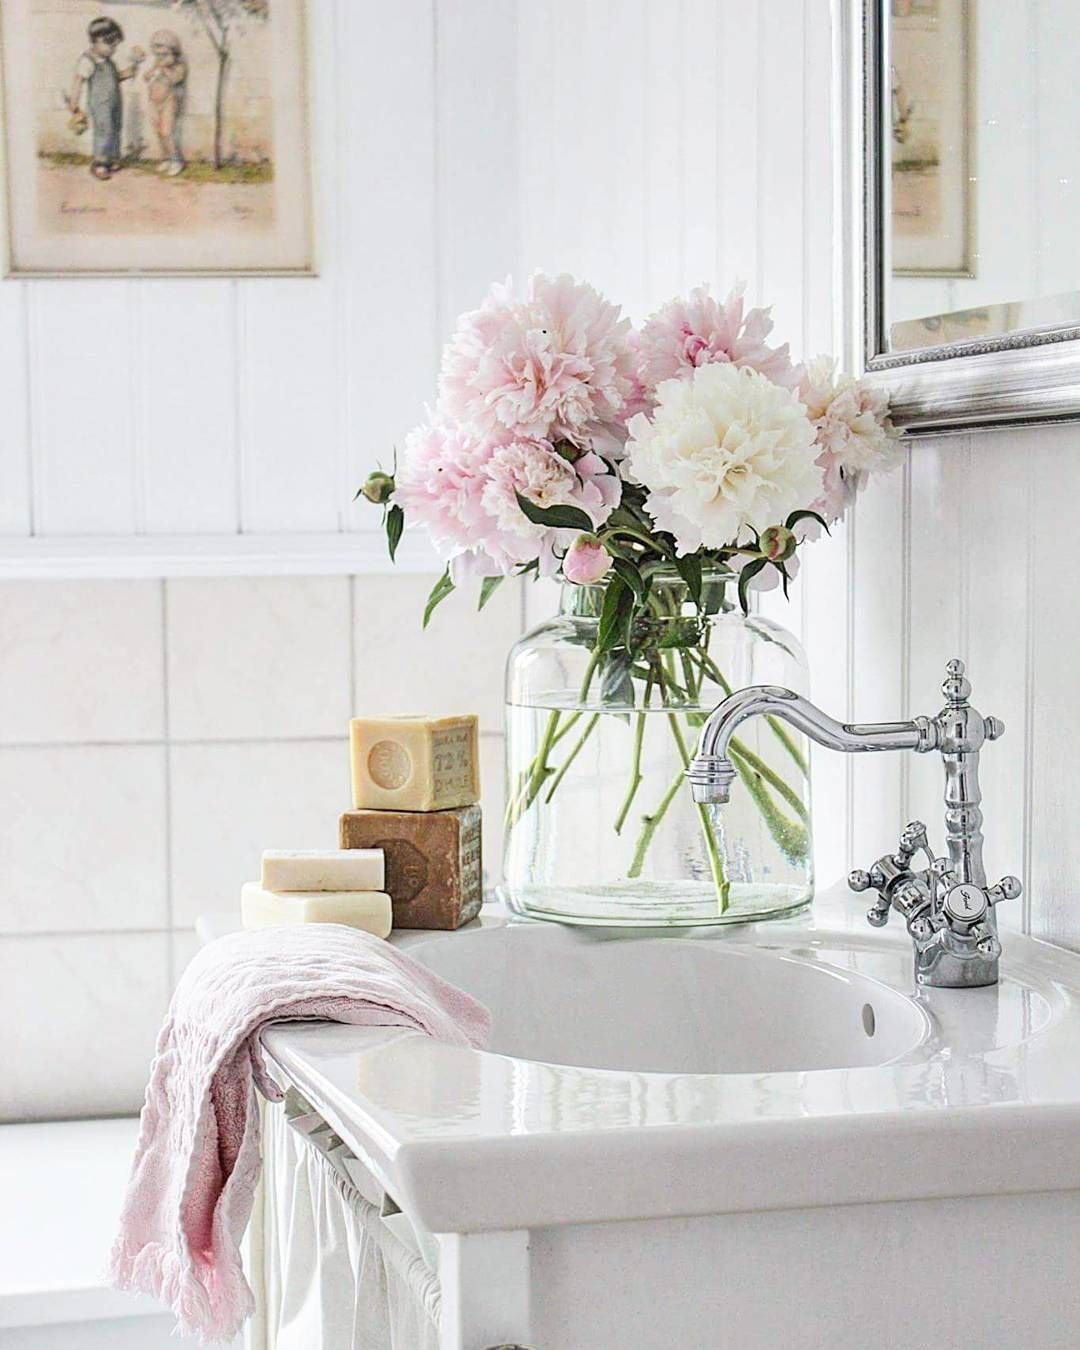 Искусственные цветы в ванной